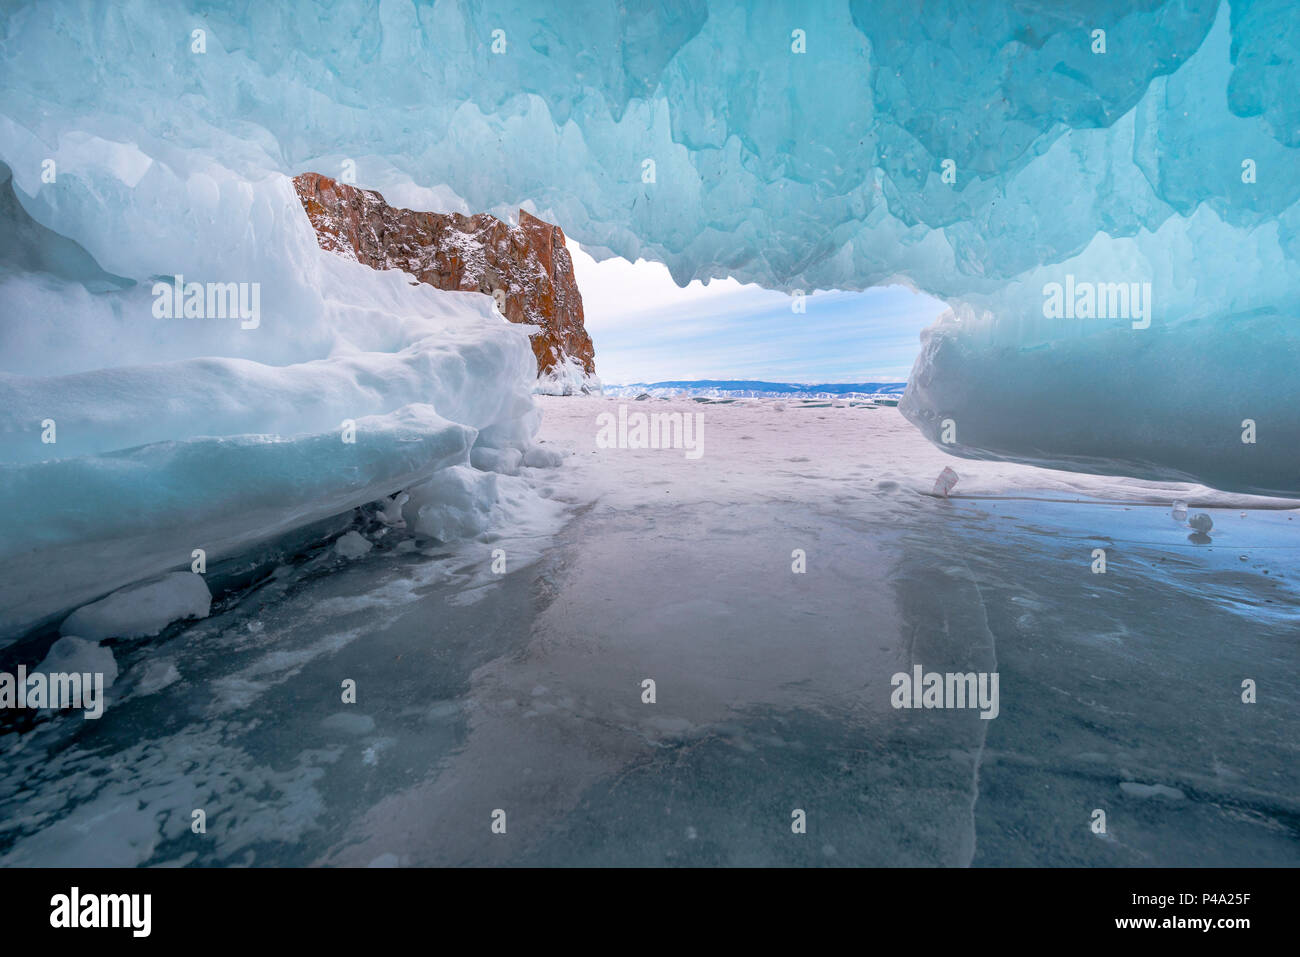 En el interior de la cueva de hielo en el lago Baikal, región de Irkutsk, Siberia, Rusia Foto de stock